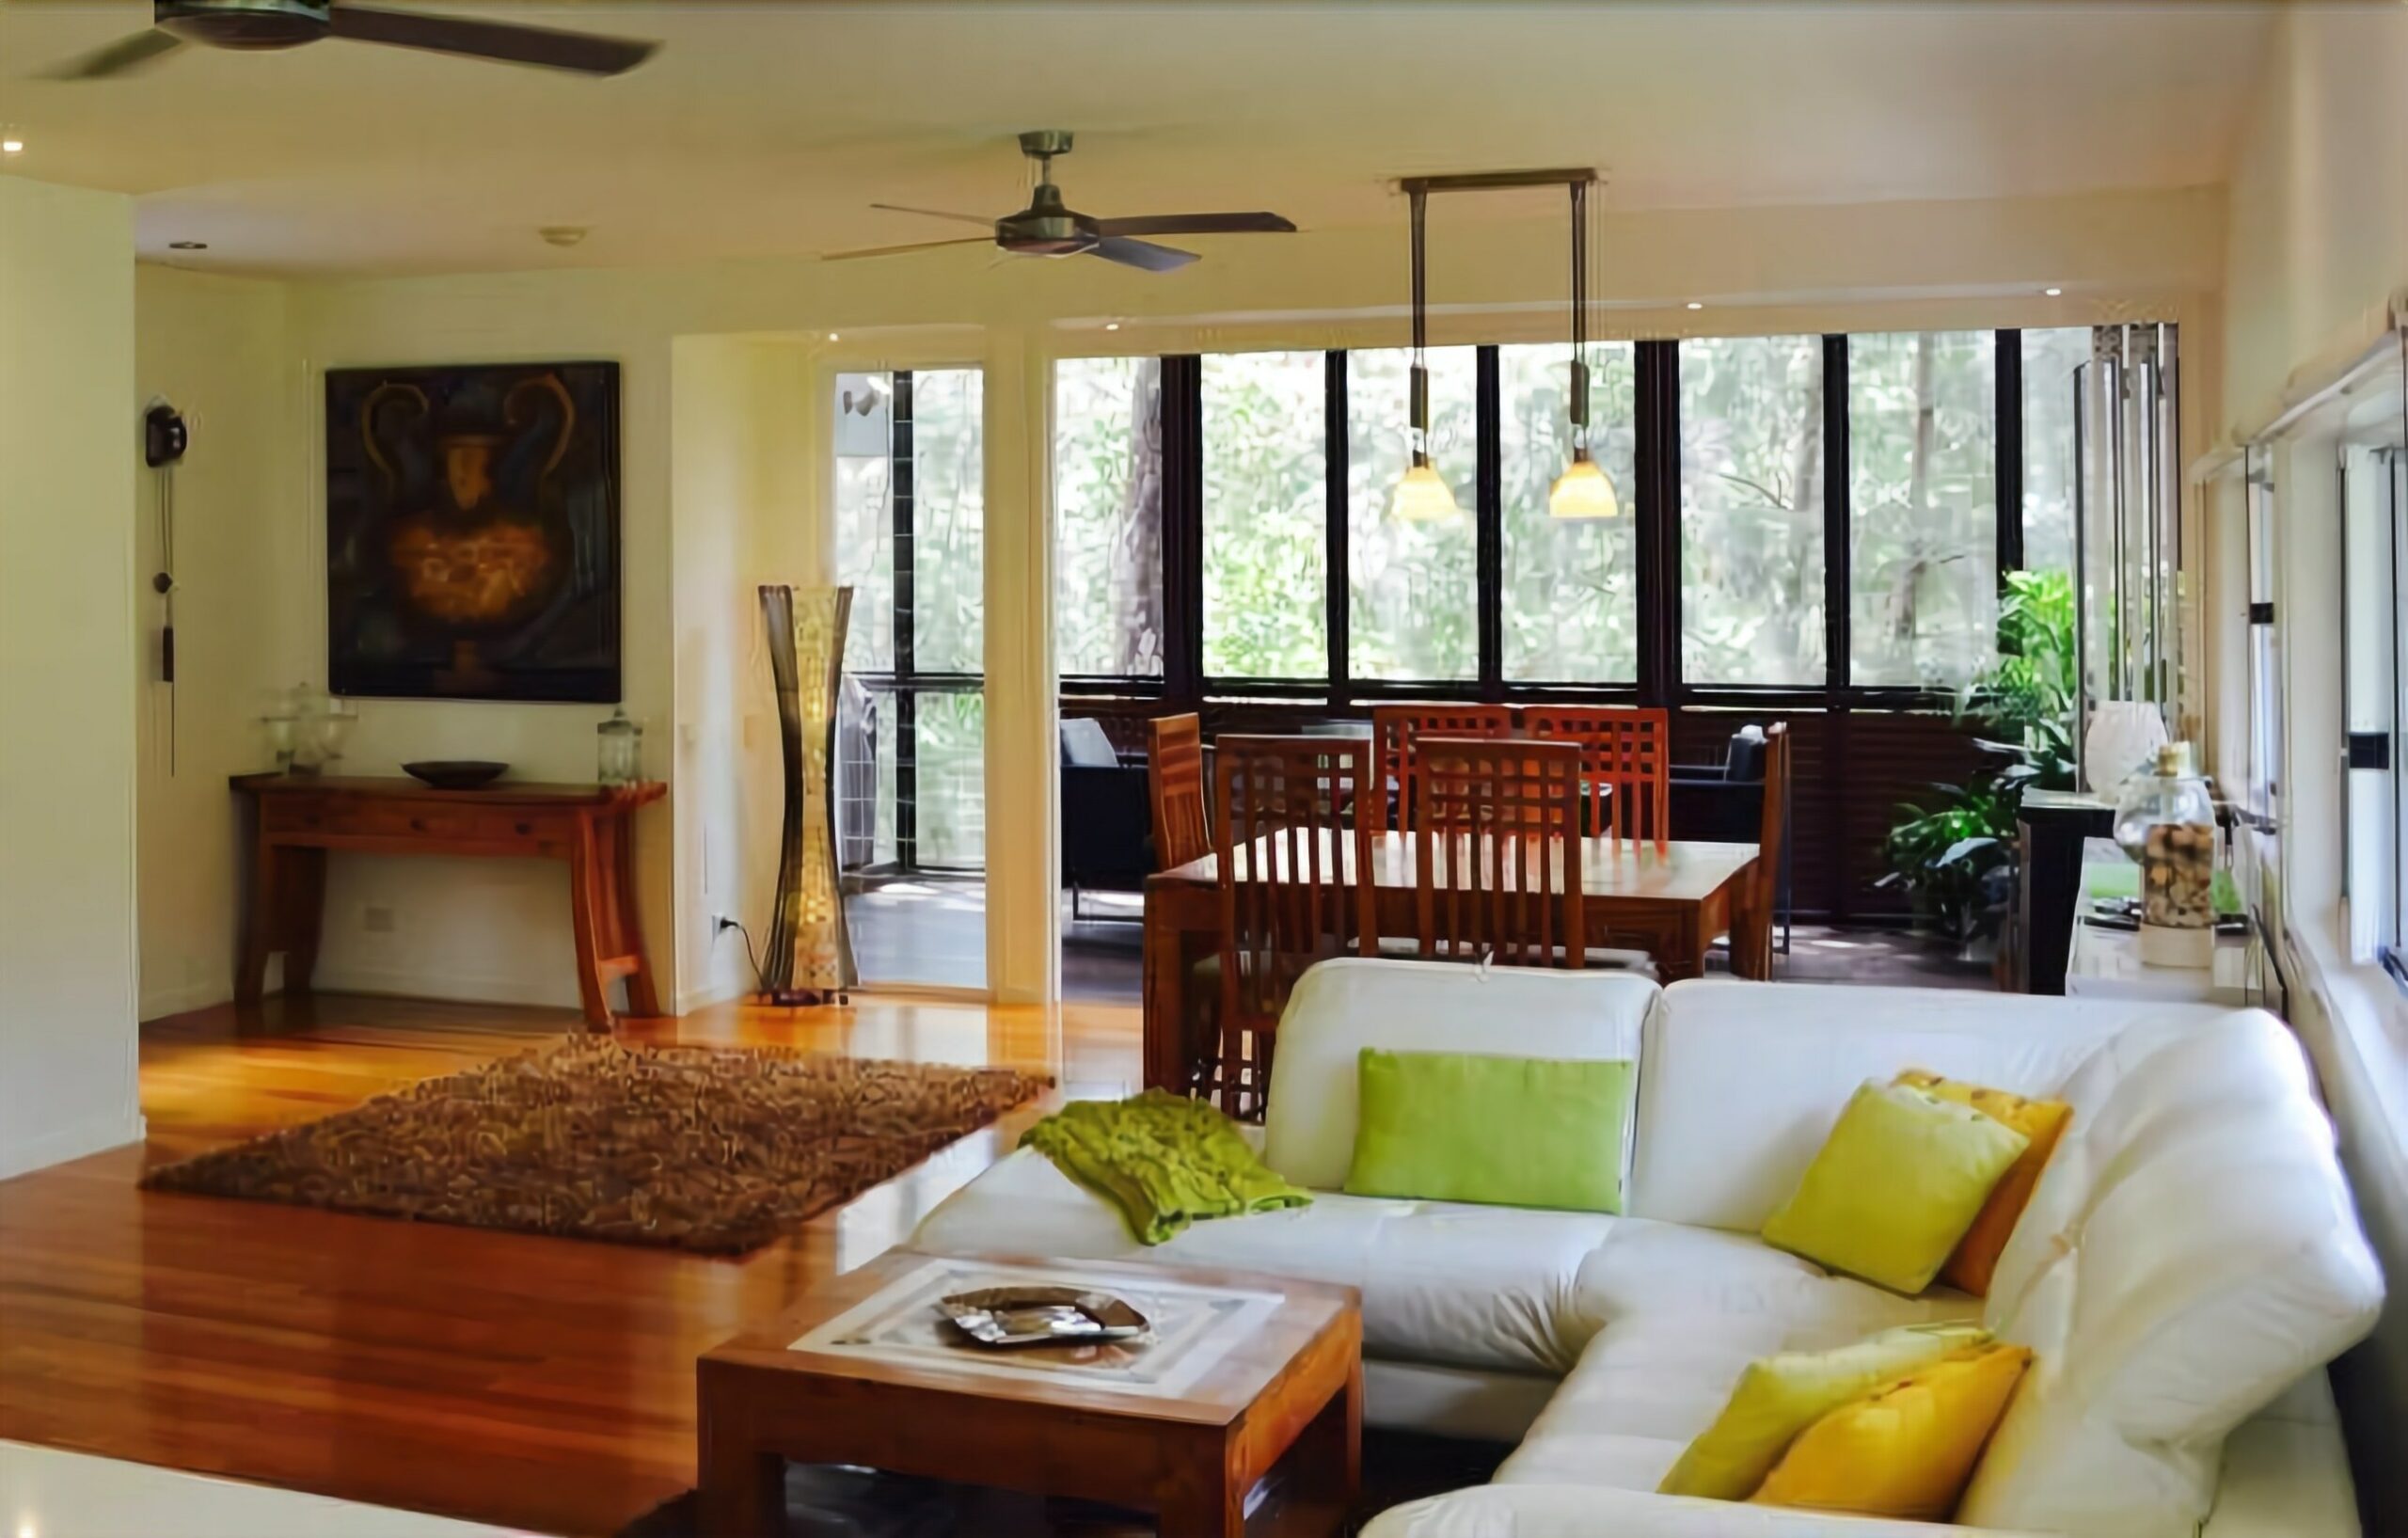 Luxury 3 Bedroom House-family Getaway in Bushland Resort: Beach,pool,spa,tennis